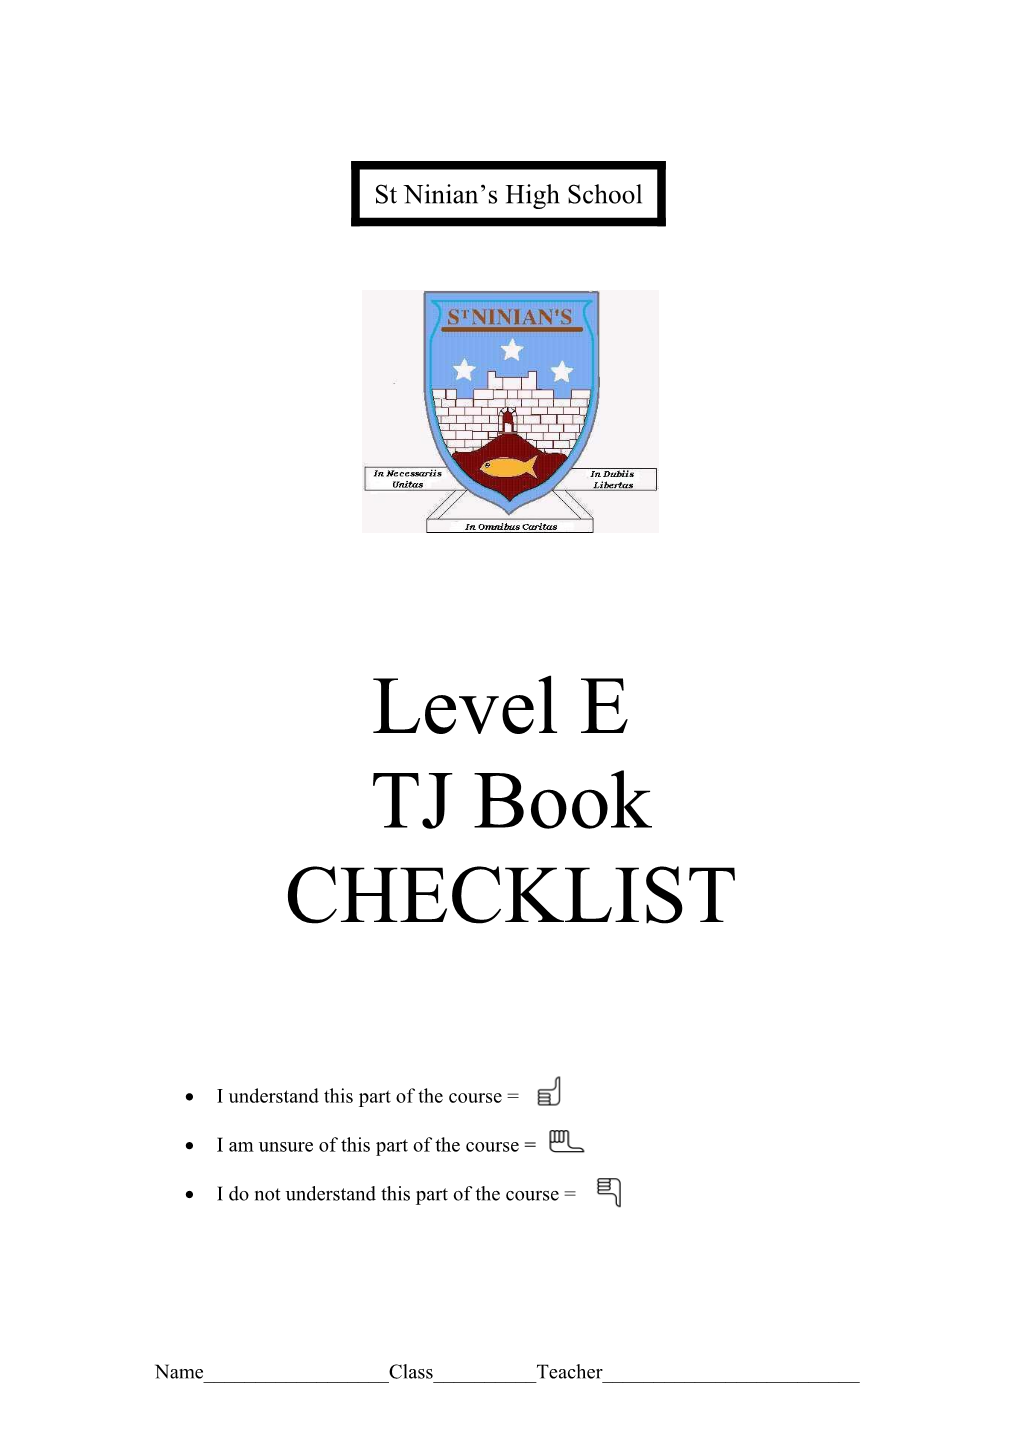 Level E Course Checklist